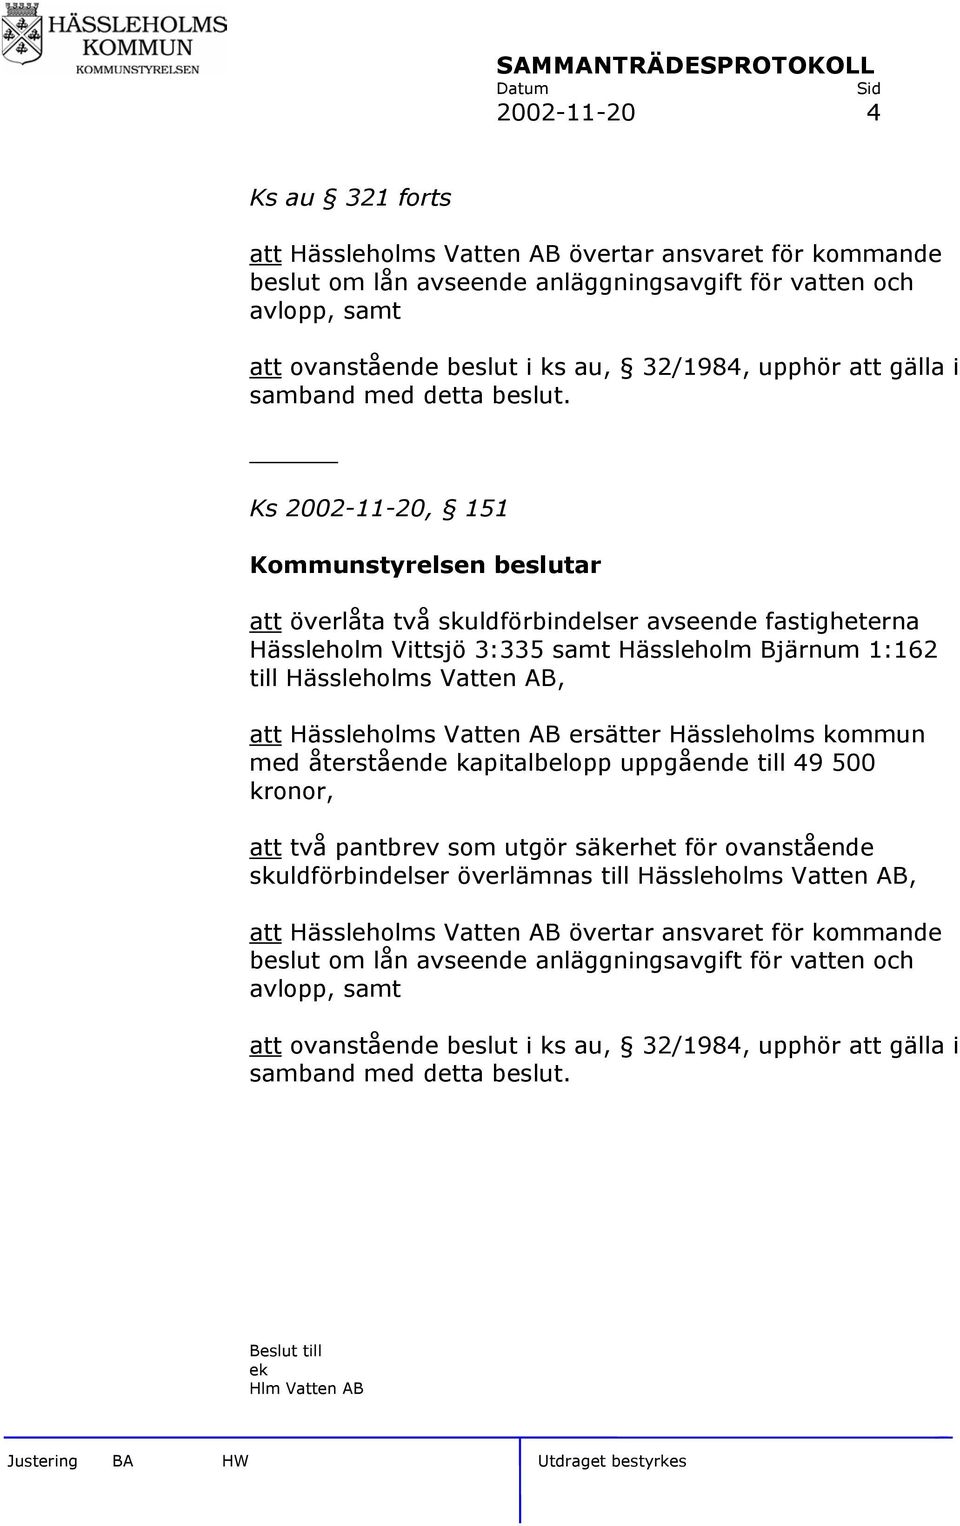 Ks 2002-11-20, 151 Kommunstyrelsen beslutar att överlåta två skuldförbindelser avseende fastigheterna Hässleholm Vittsjö 3:335 samt Hässleholm Bjärnum 1:162 till Hässleholms Vatten AB, att